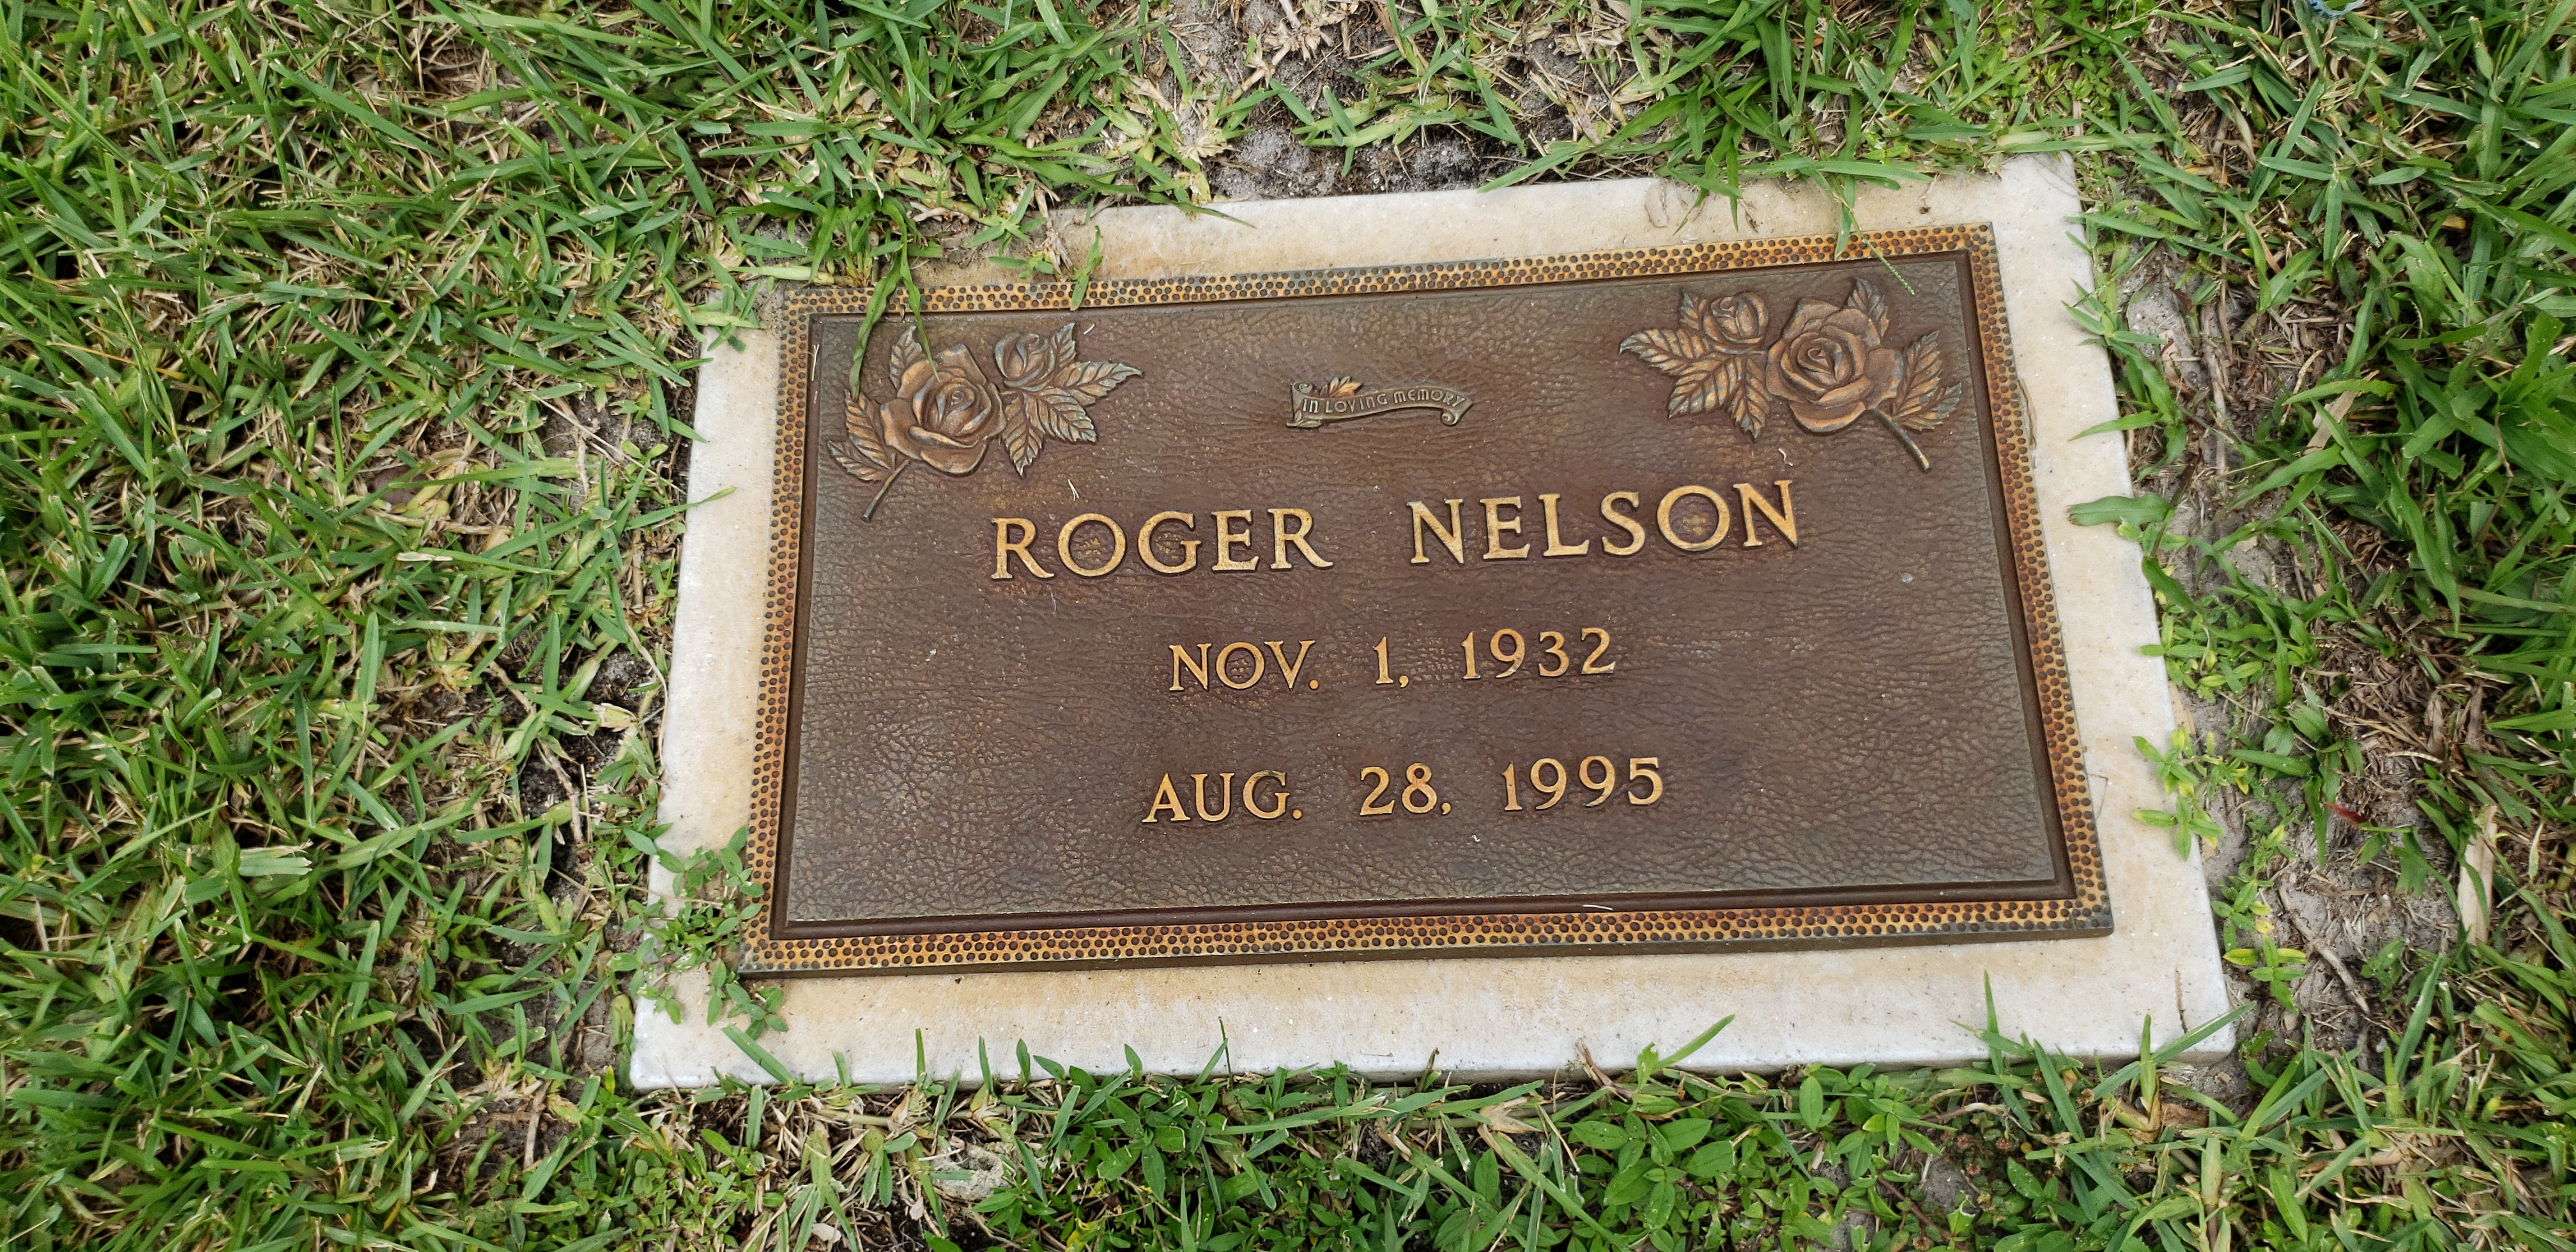 Roger Nelson